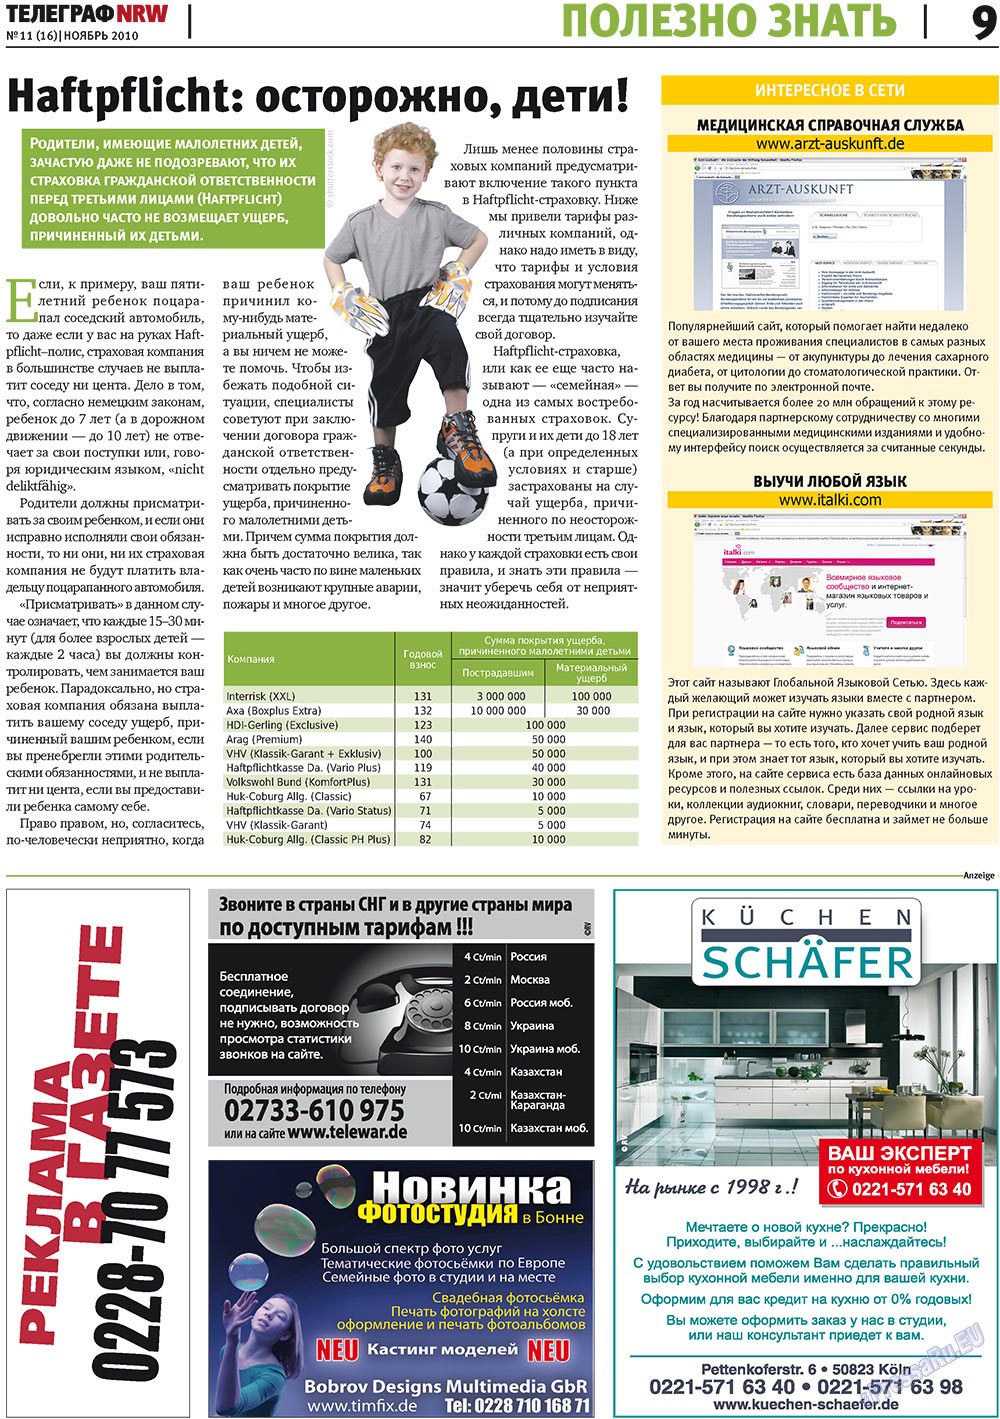 Телеграф NRW (газета). 2010 год, номер 11, стр. 9